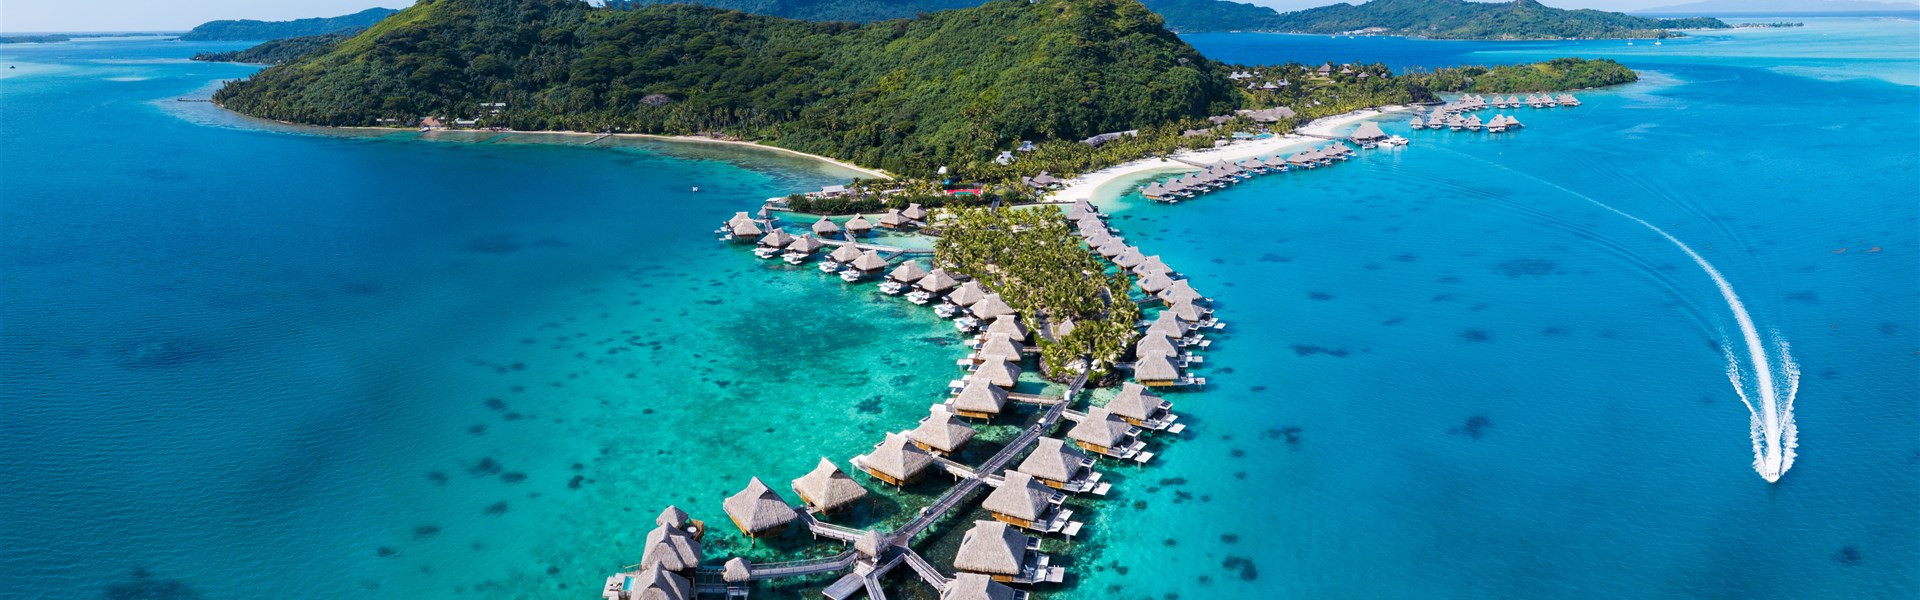 Marco Polo - Conrad Bora Bora Nui Resort & Spa - ostrov Bora Bora - 